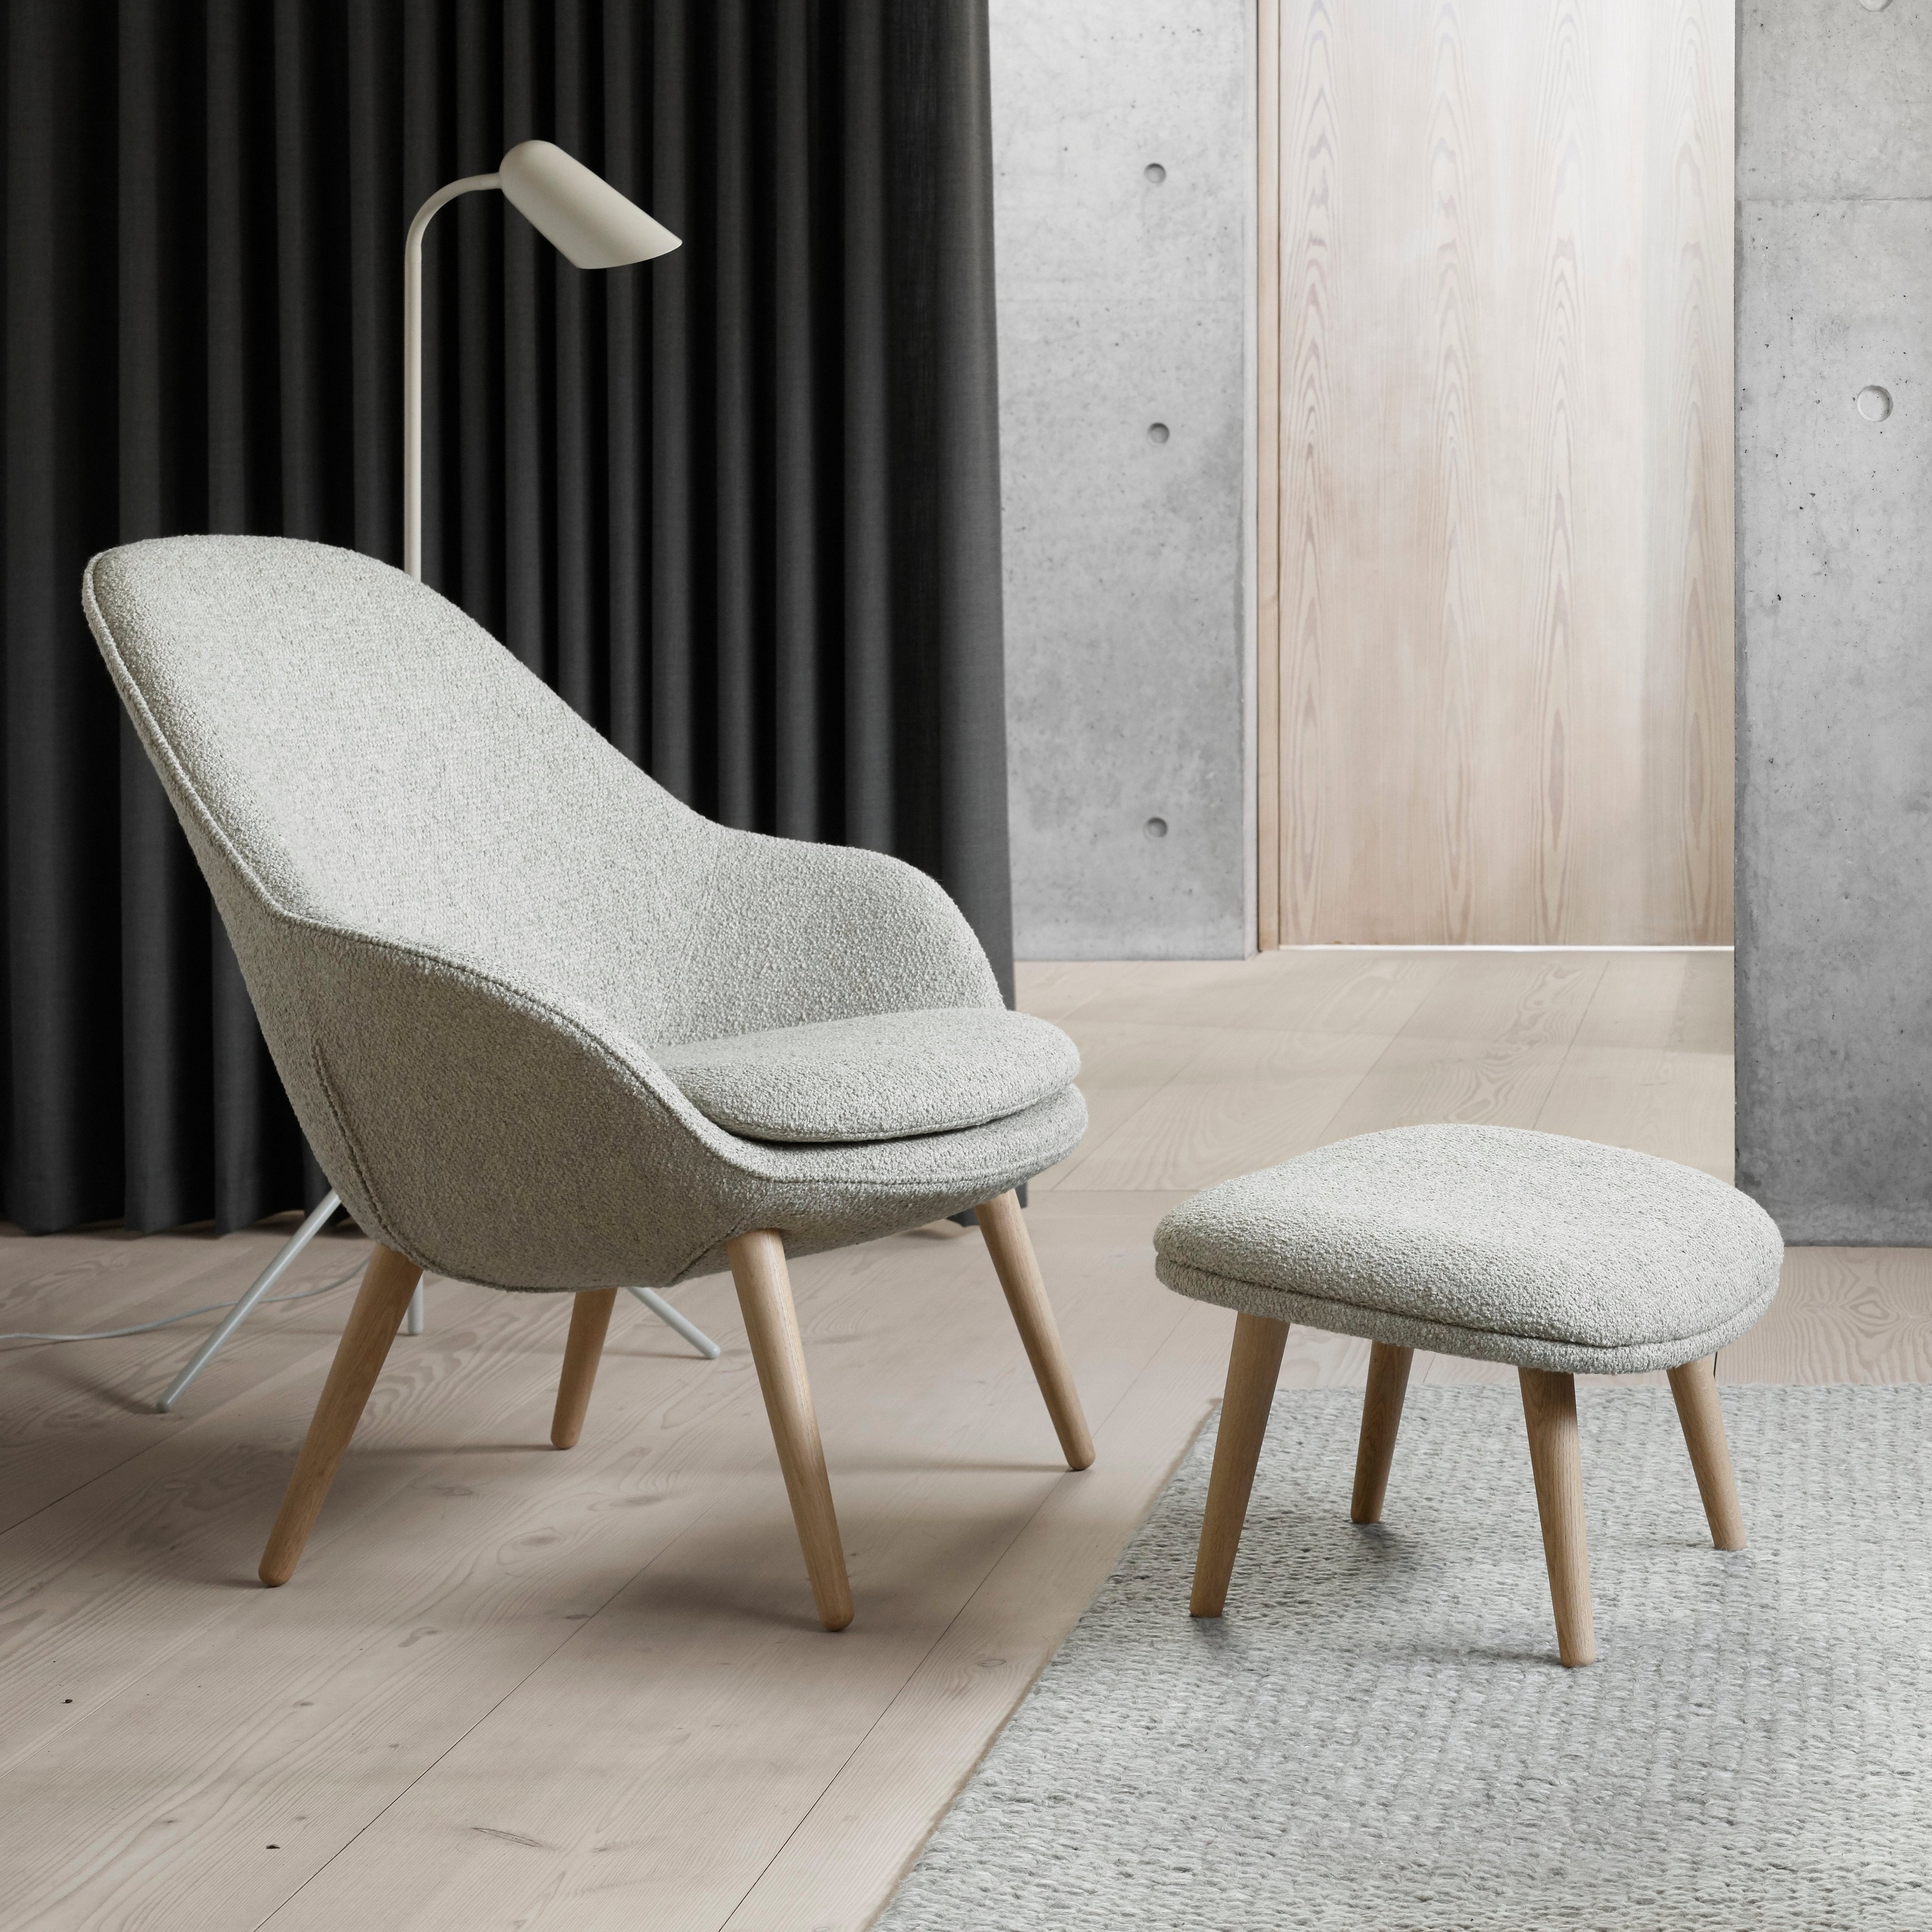 Современный стул с оттоманкой аналогичного дизайна, напольной лампой, темными шторами и акцентными элементами из бетона.